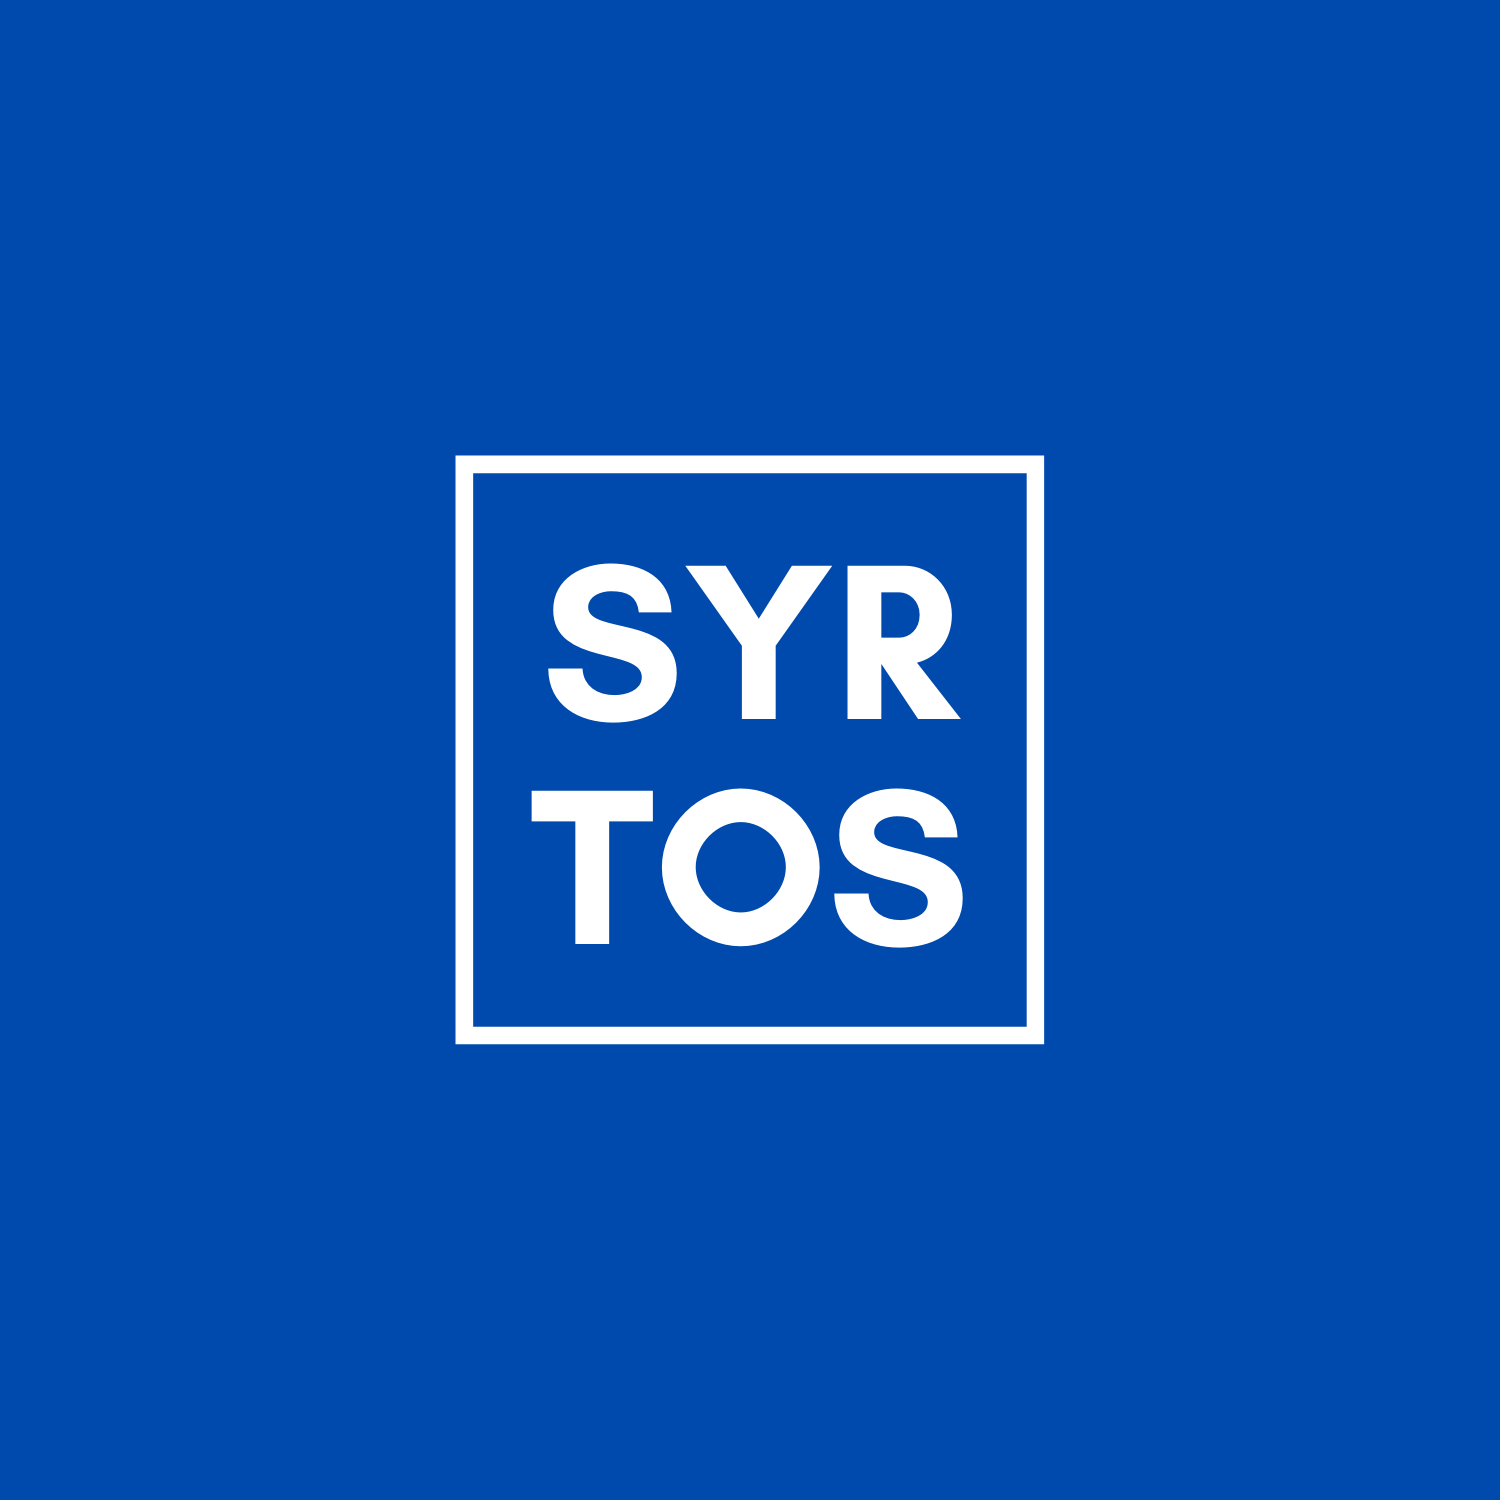 Show artwork for Syrtos